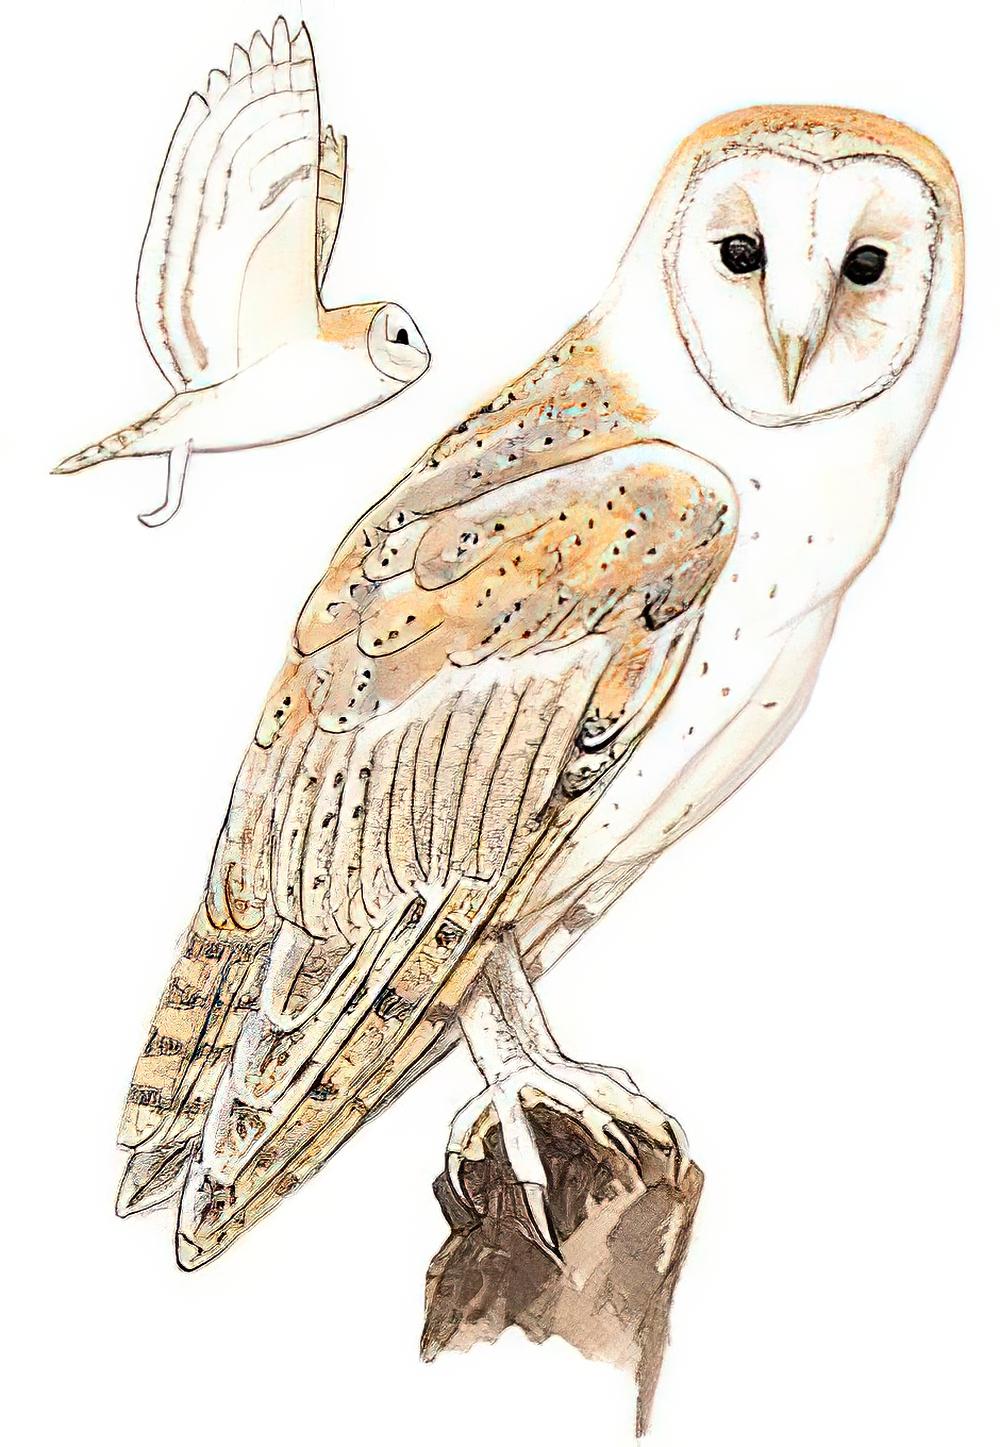 仓鸮 / Eastern Barn Owl / Tyto javanica